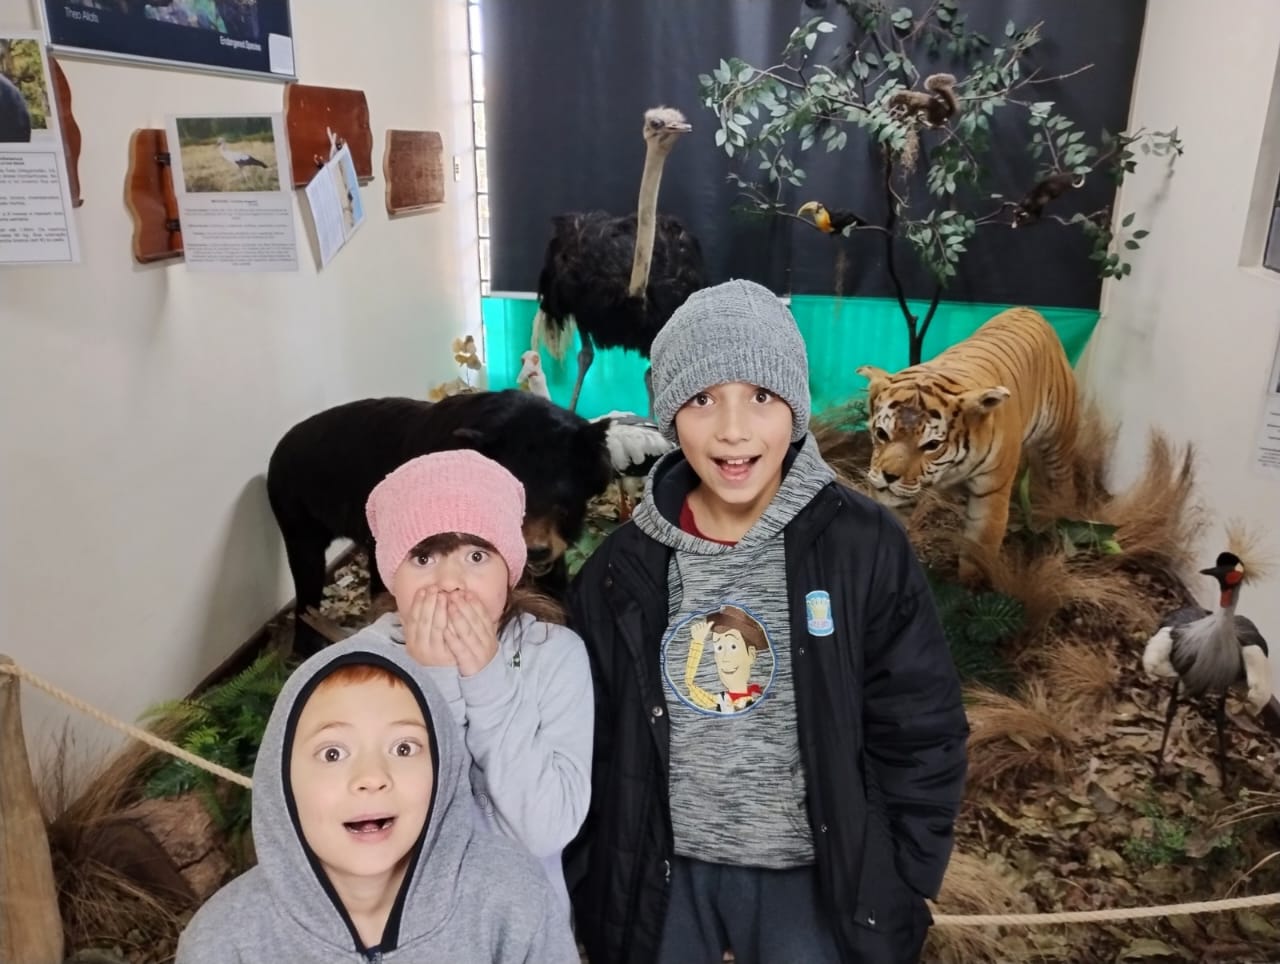 Museu de História Natural de Curitiba: para as crianças arregalarem os olhos